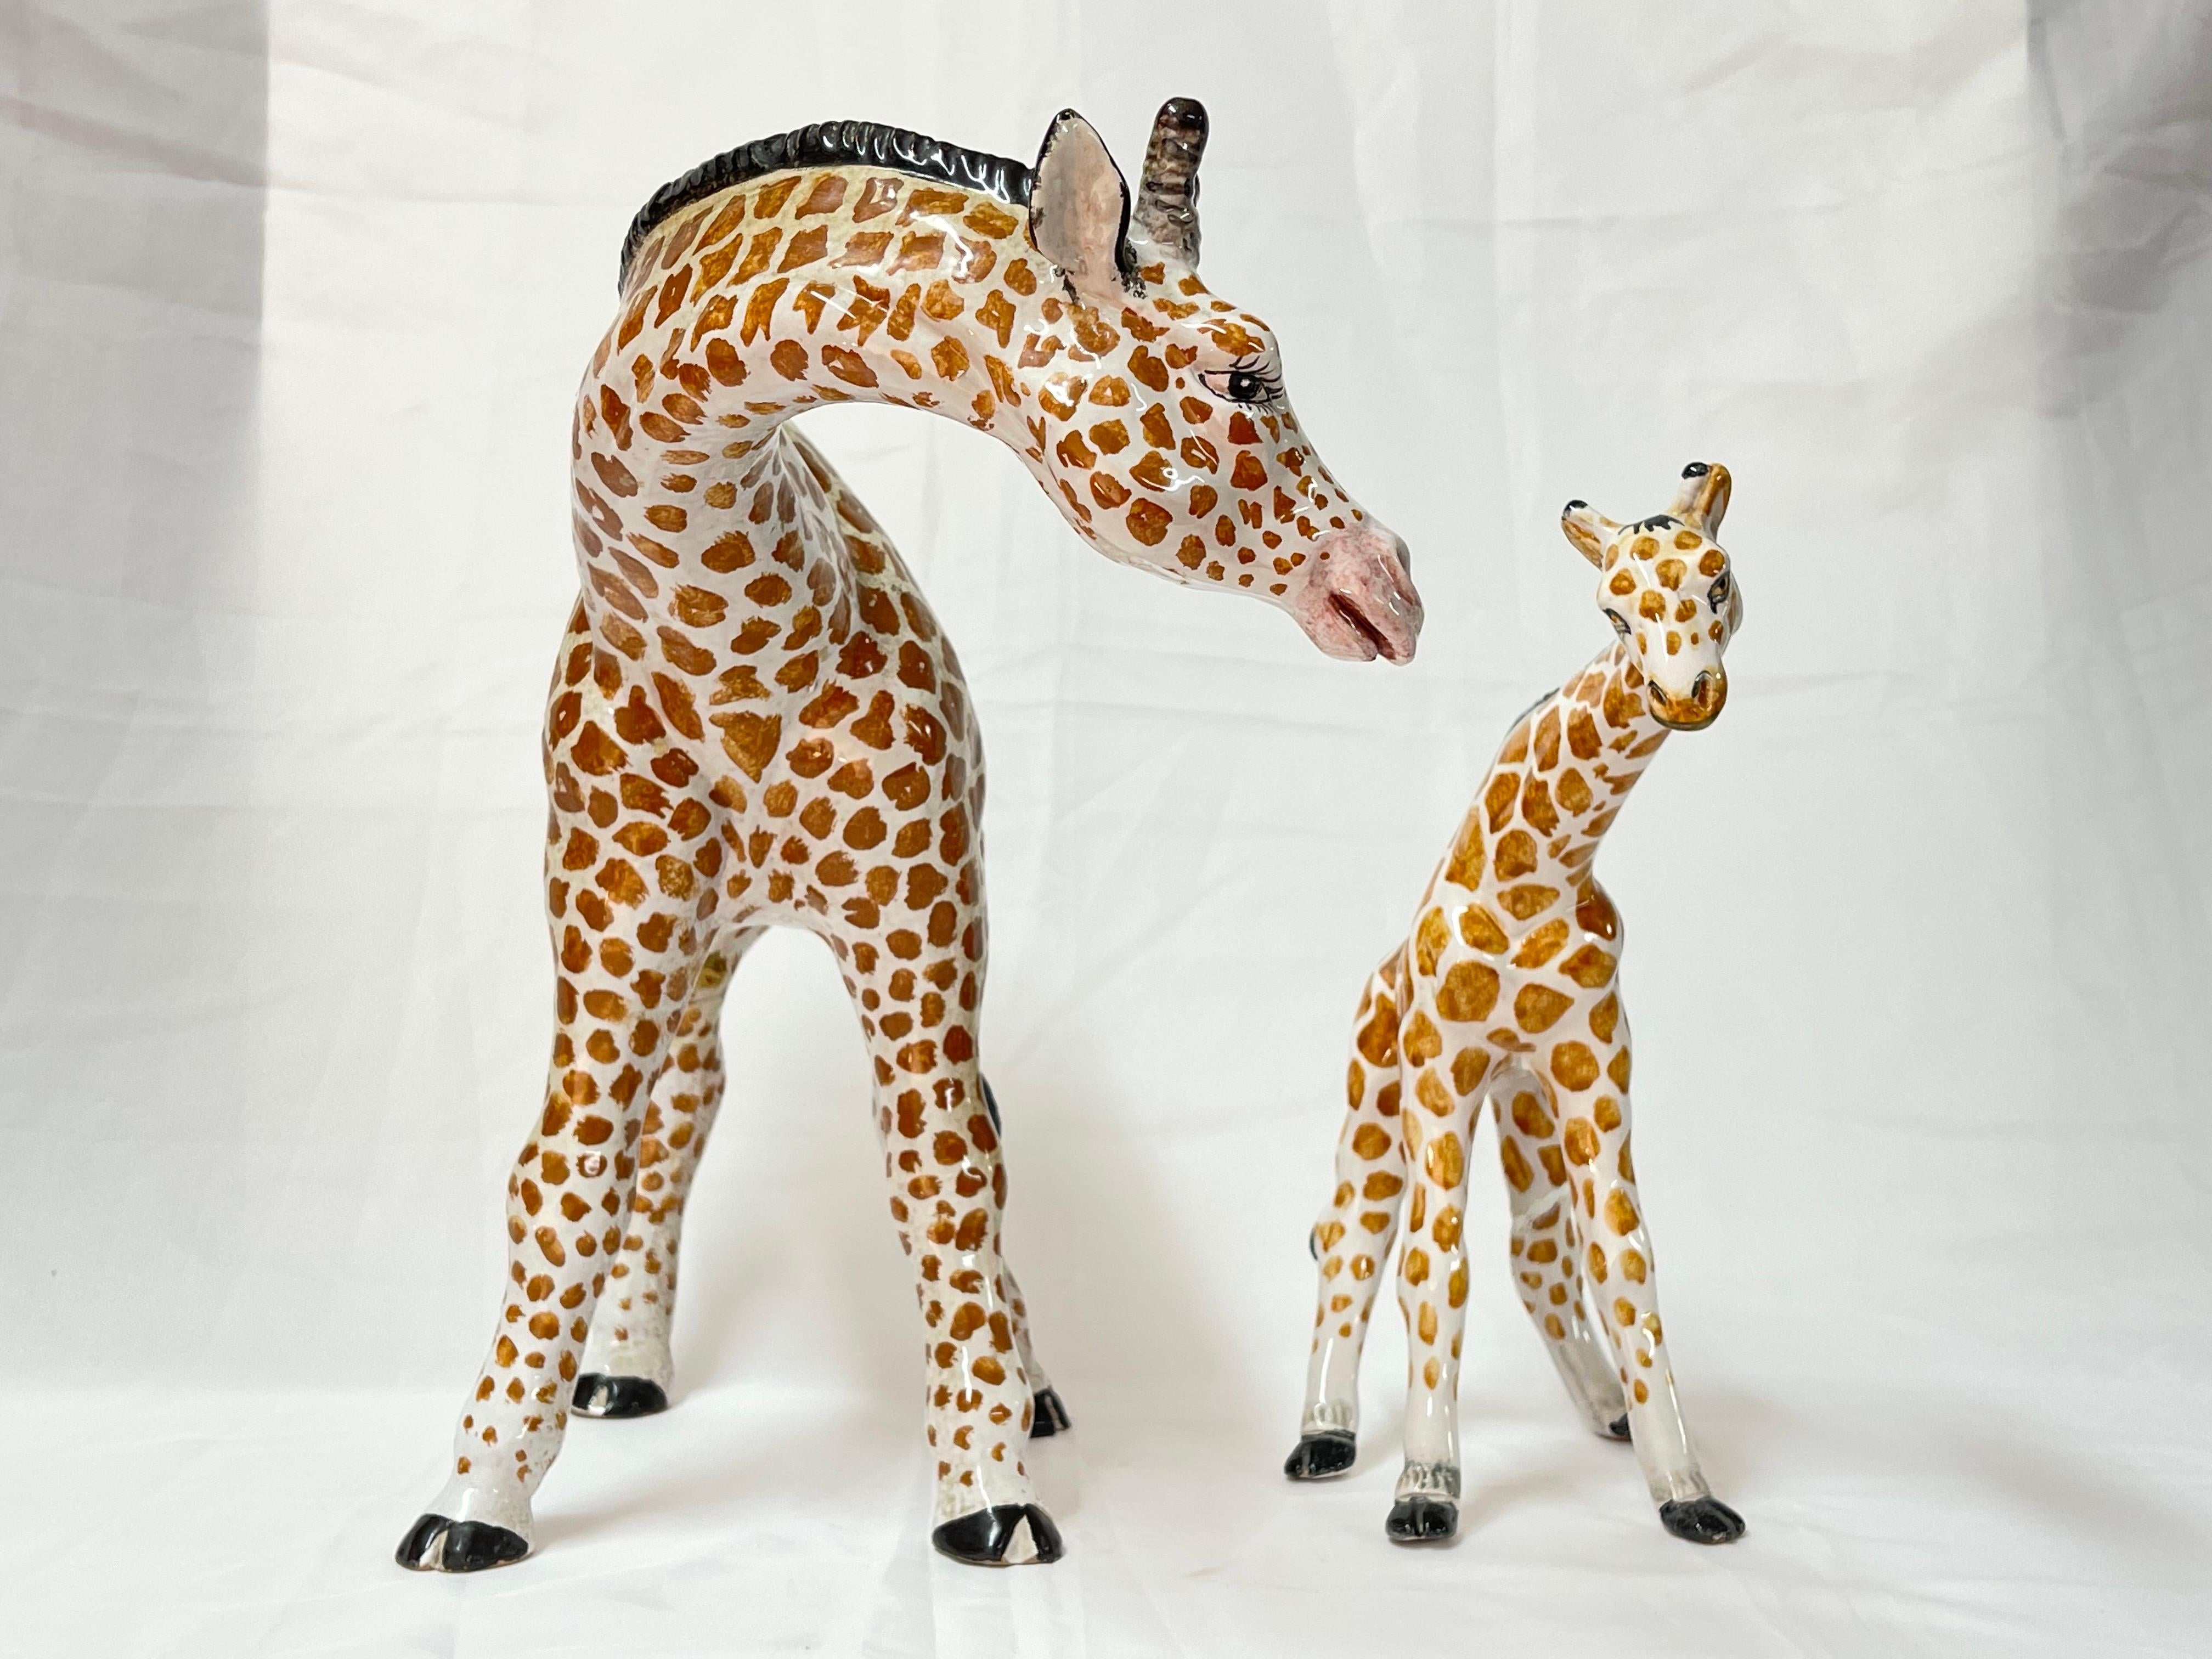 1970's Pair of Large Italian Ceramic Giraffes. Liebevolle Mutter und Baby .
Die größte Giraffe misst ungefähr: 14,25